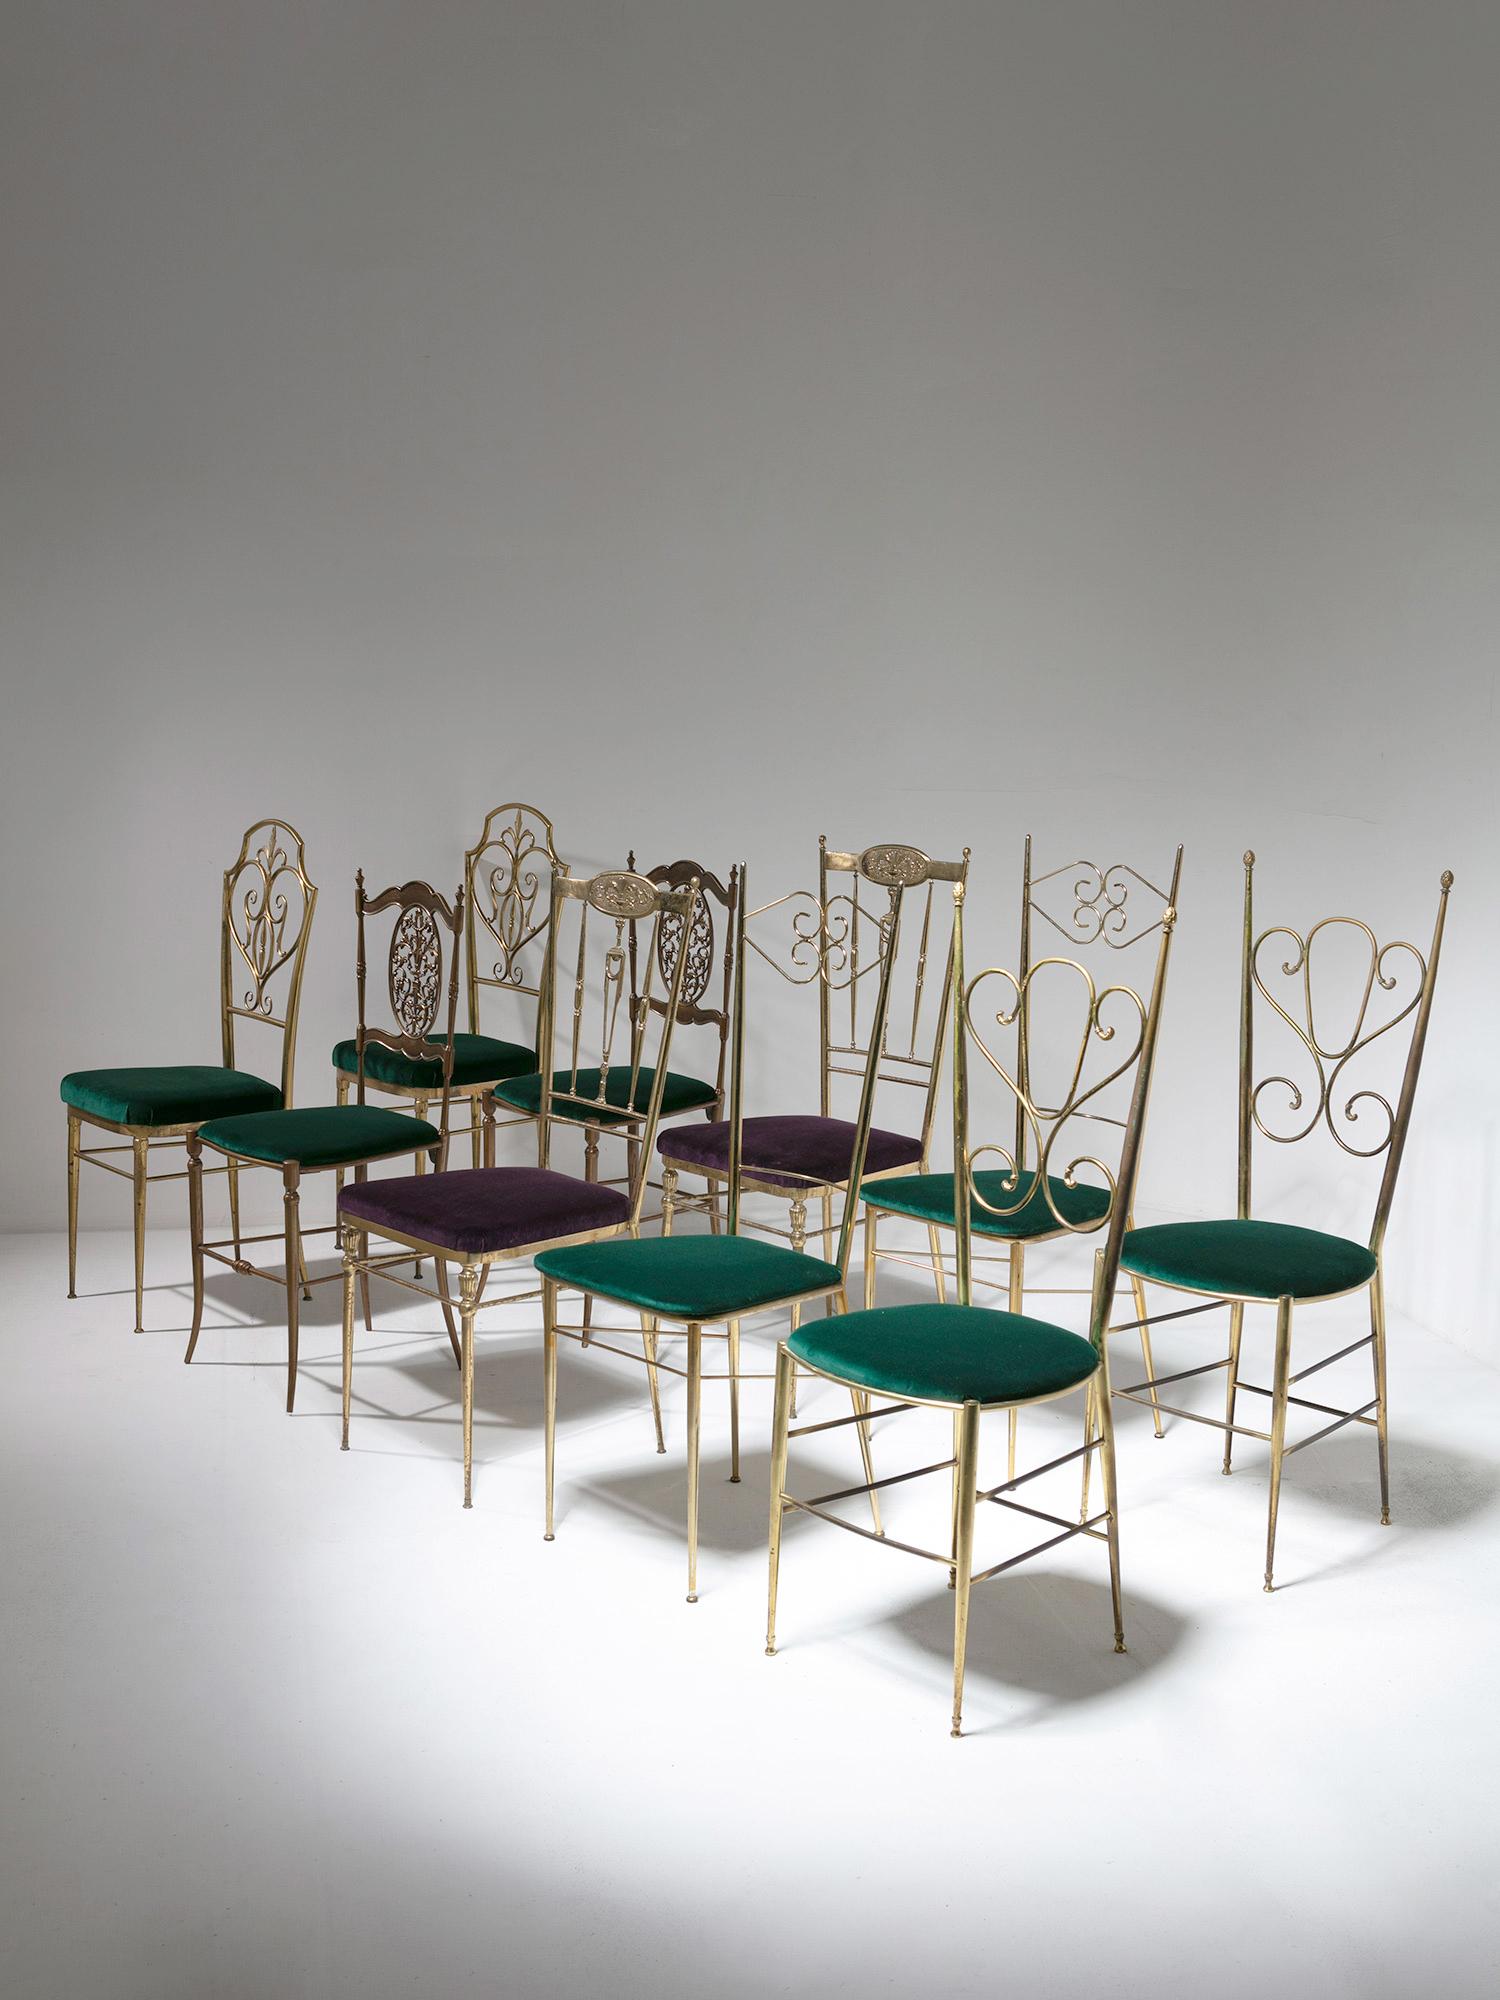 Ensemble de cinq paires de chaises Chiavari en laiton.
Chaque paire présente une taille différente et des formes de dossier baroques.
Quatre paires avec assise en velours vert, une paire avec couverture en velours violet.
La taille correspond à la